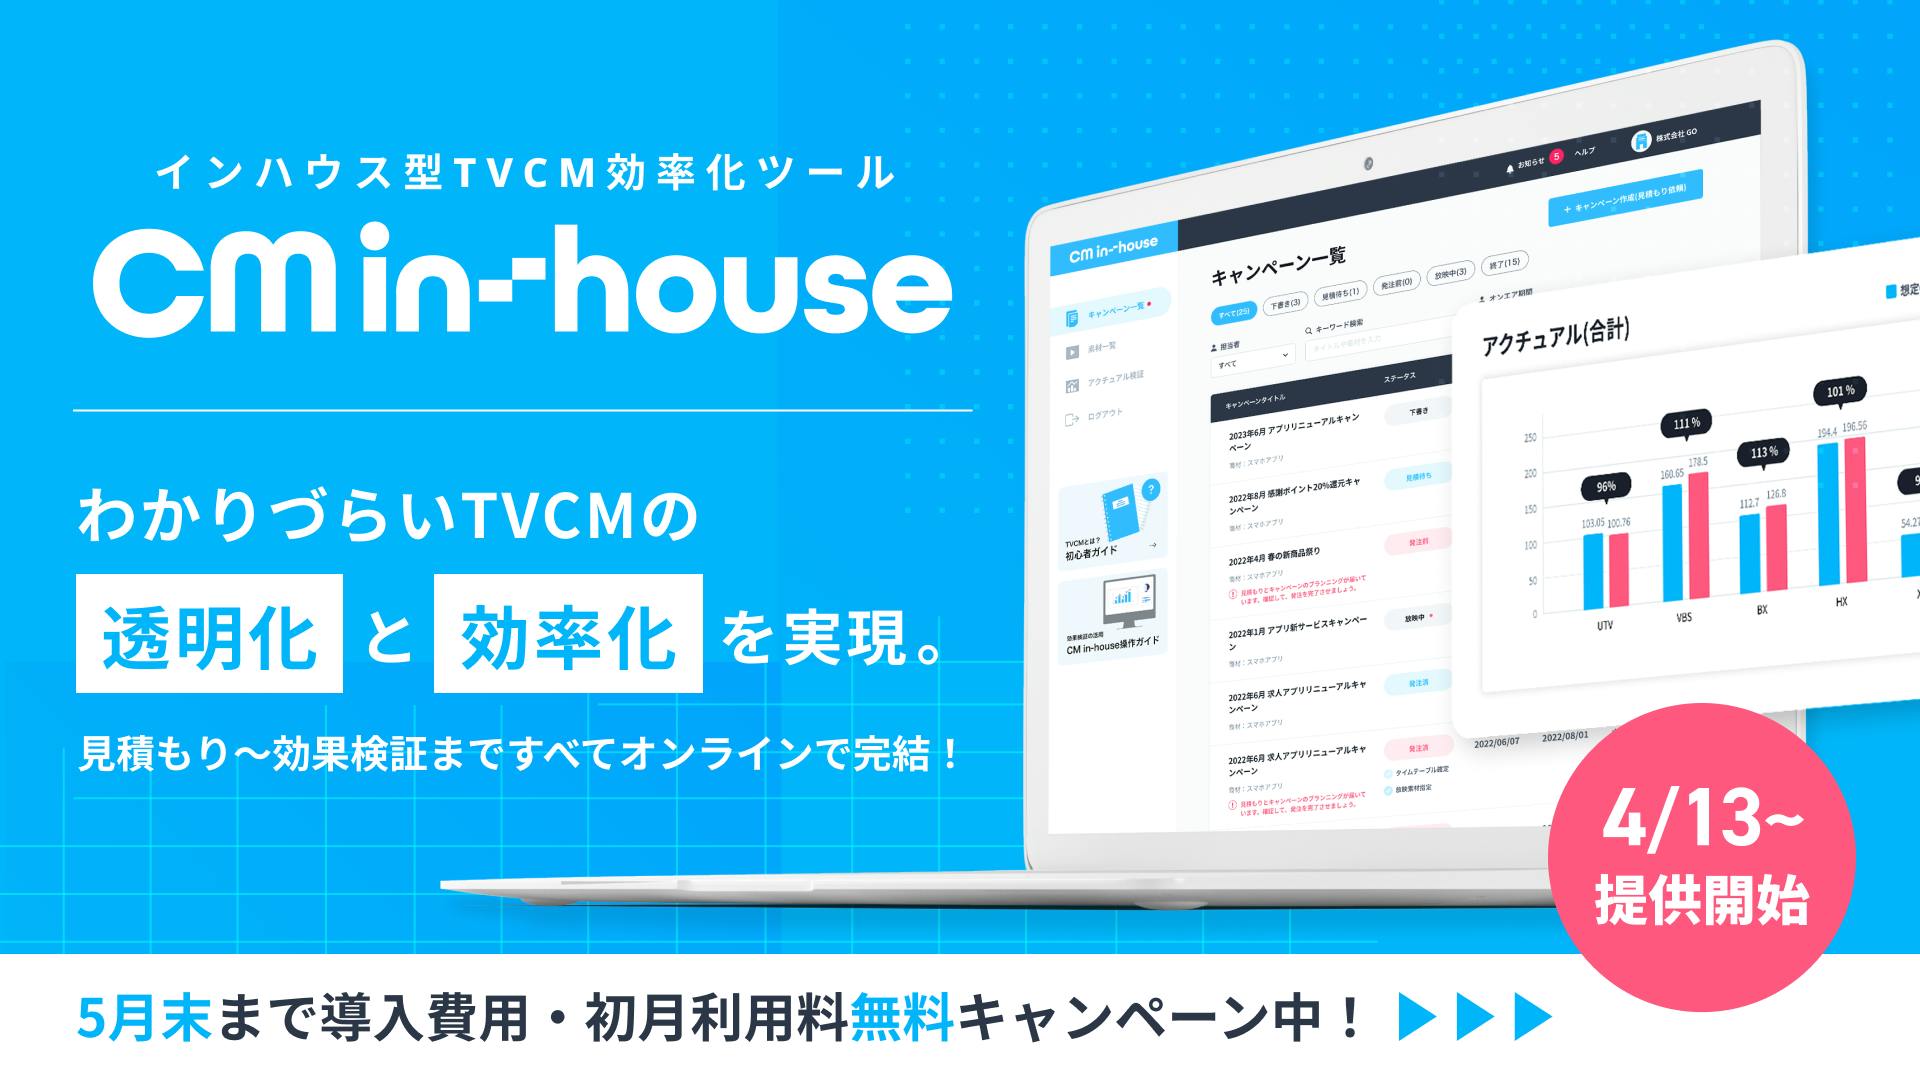 インハウス型TVCM効率化ツール「CM-inhouse」をリリースしました。（5月末まで導入費用・初月利用料無料キャンペーン中！）